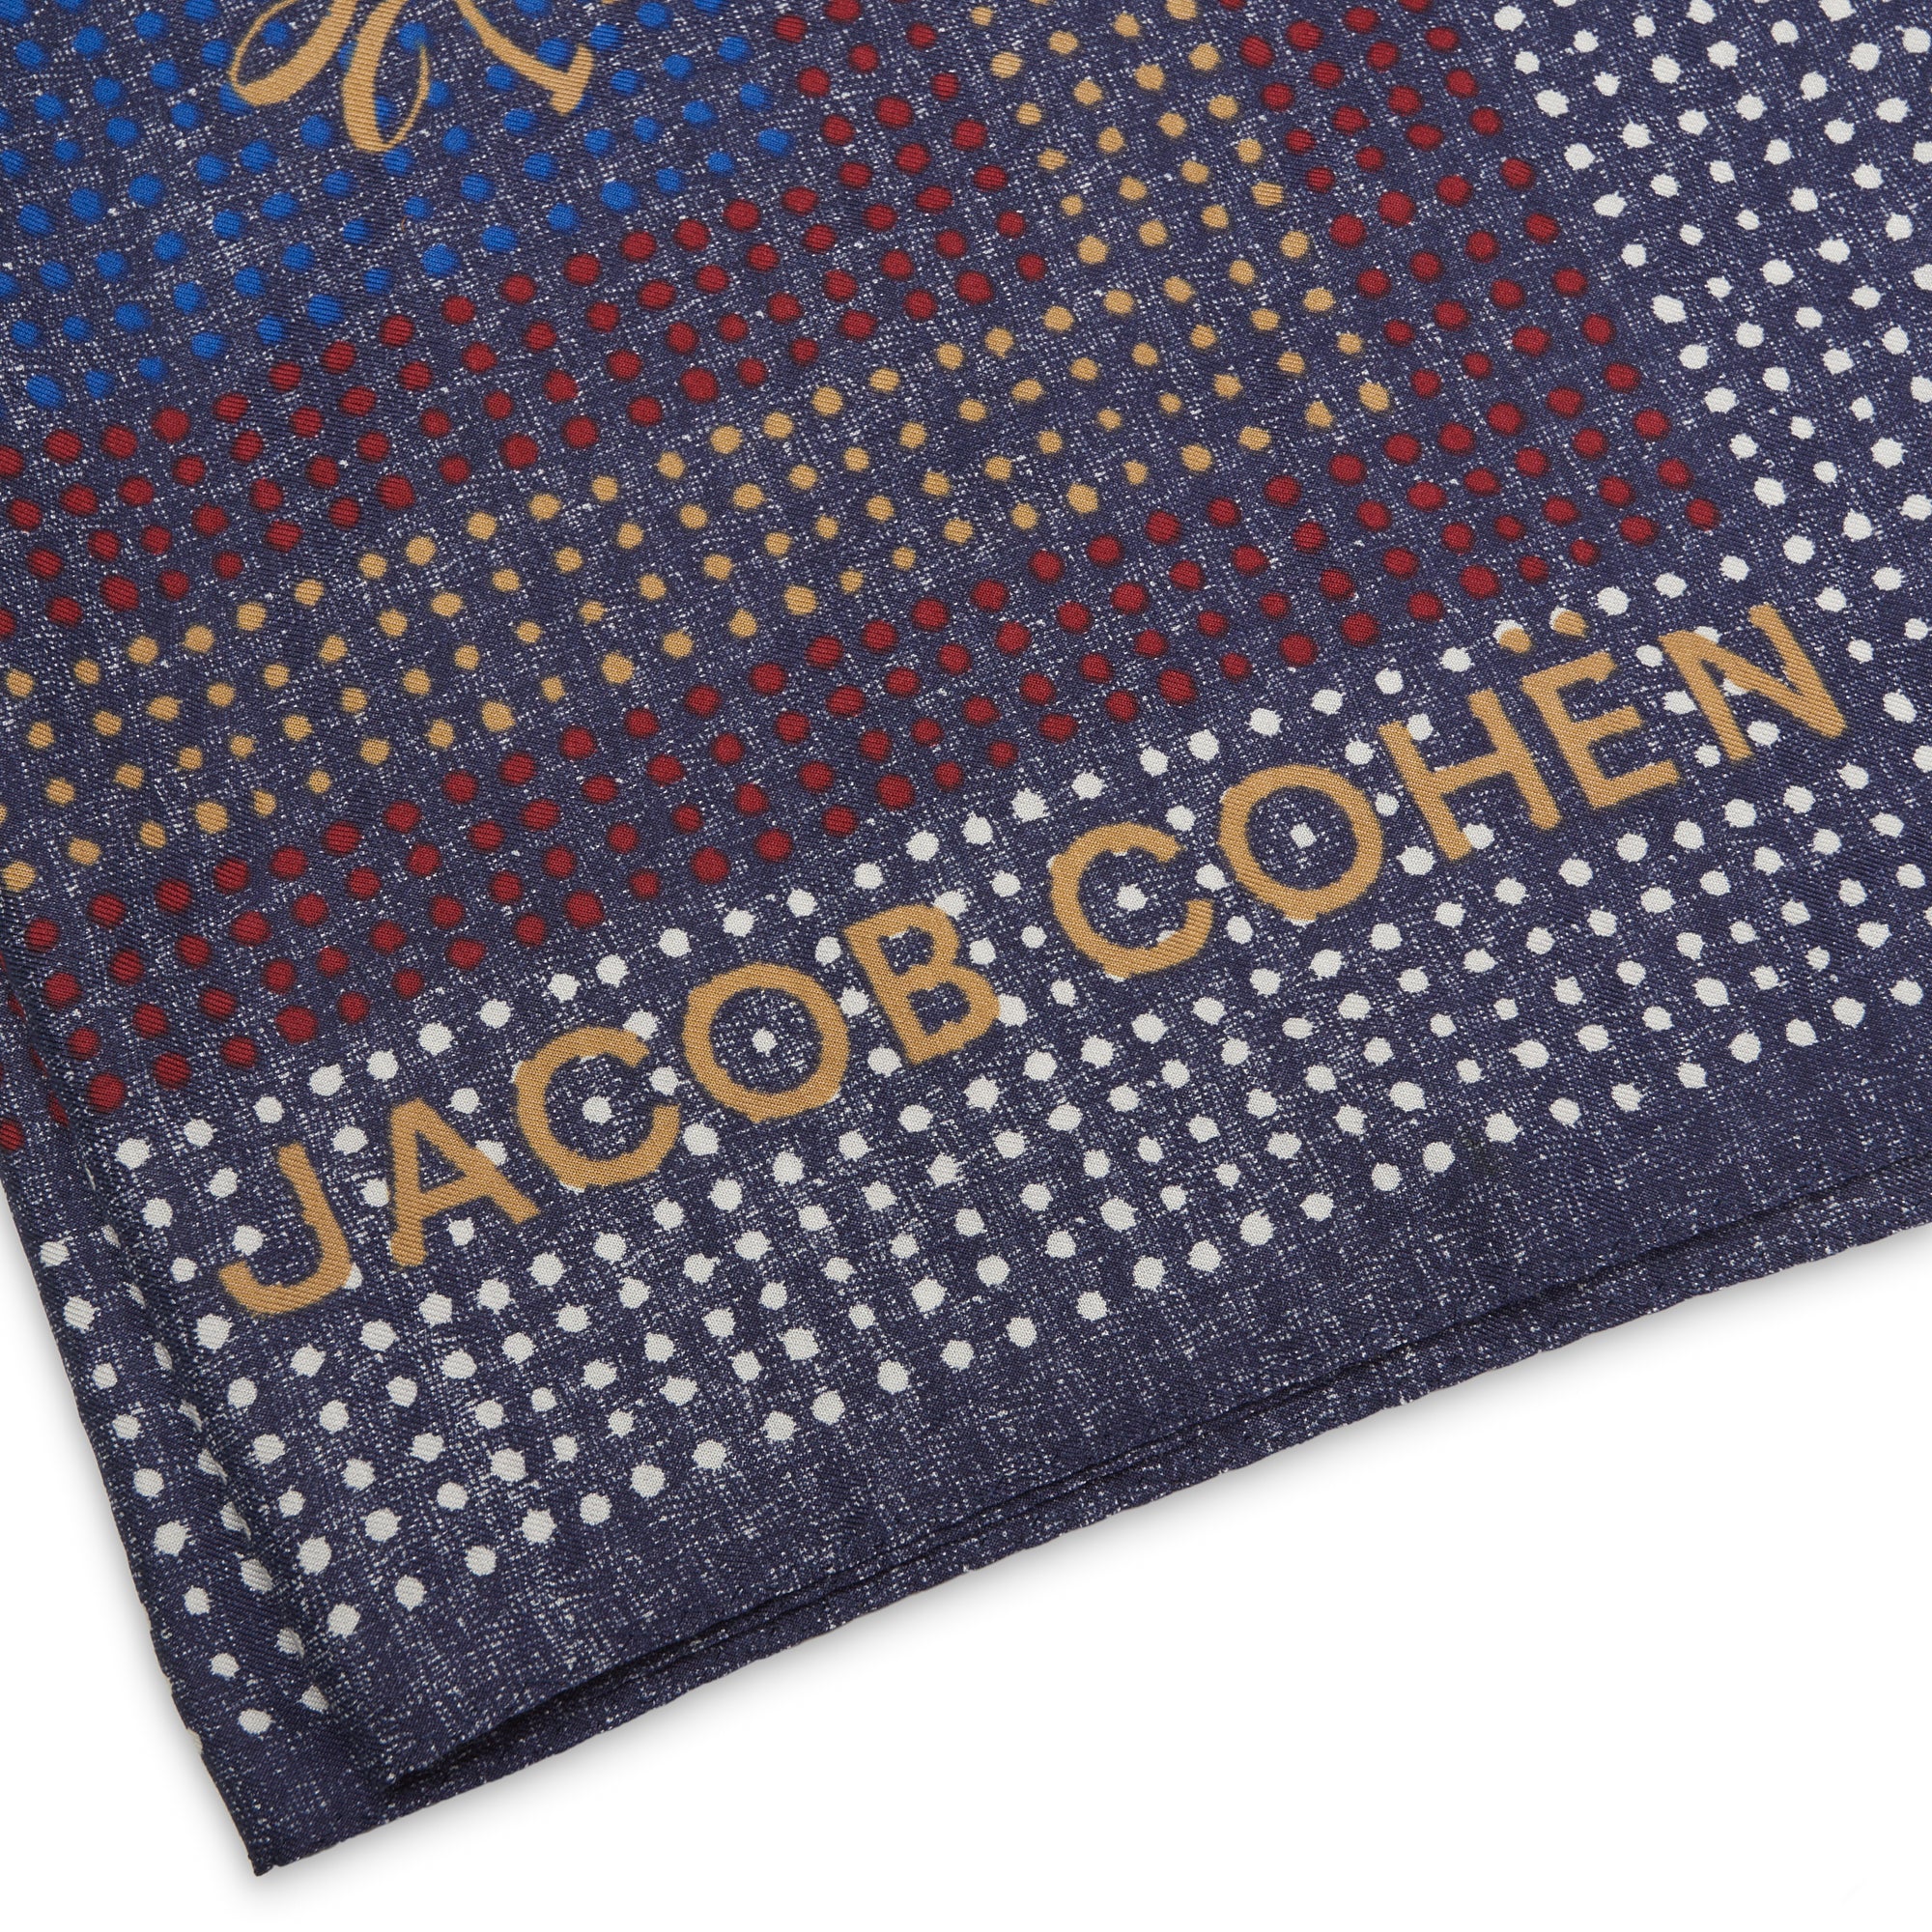 JACOB COHEN Blue Multi-color Dot Printed Cotton-Silk Pocket Square Bandana NEW JACOB COHEN